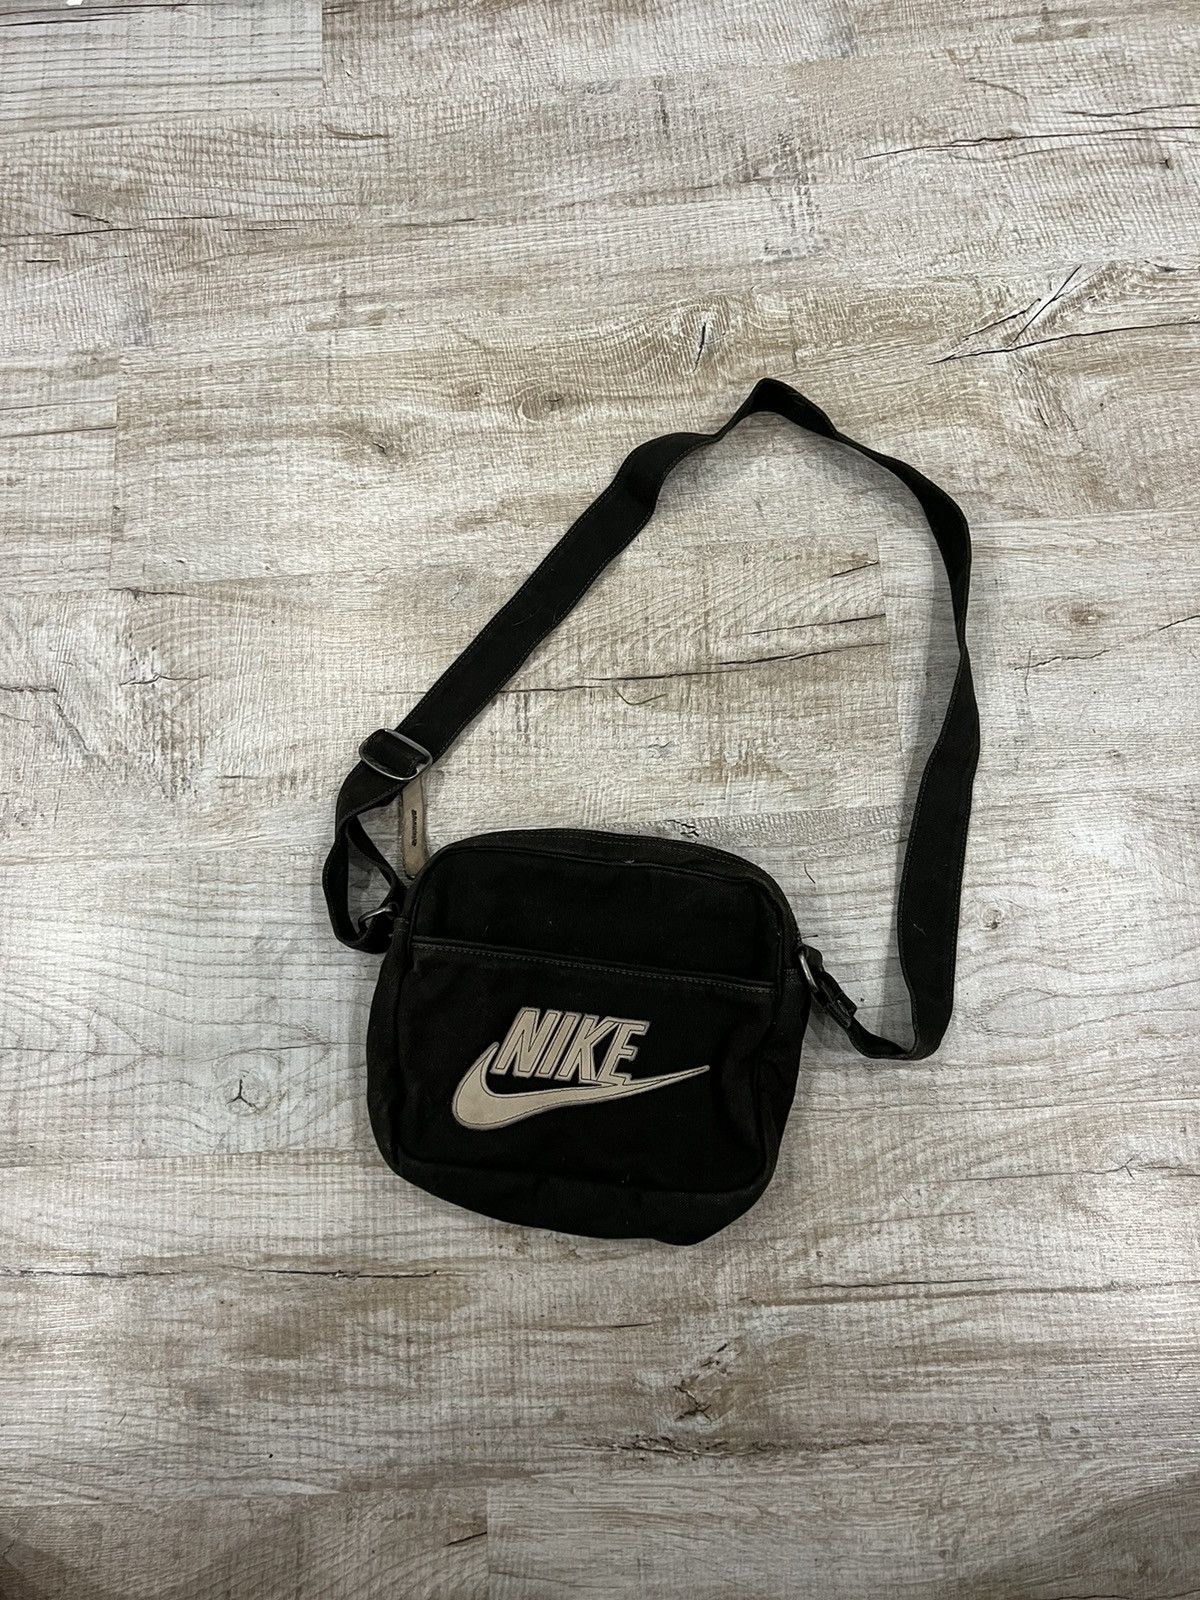 Nike Nike messenger bag vintage denim leather logo y2k style | Grailed